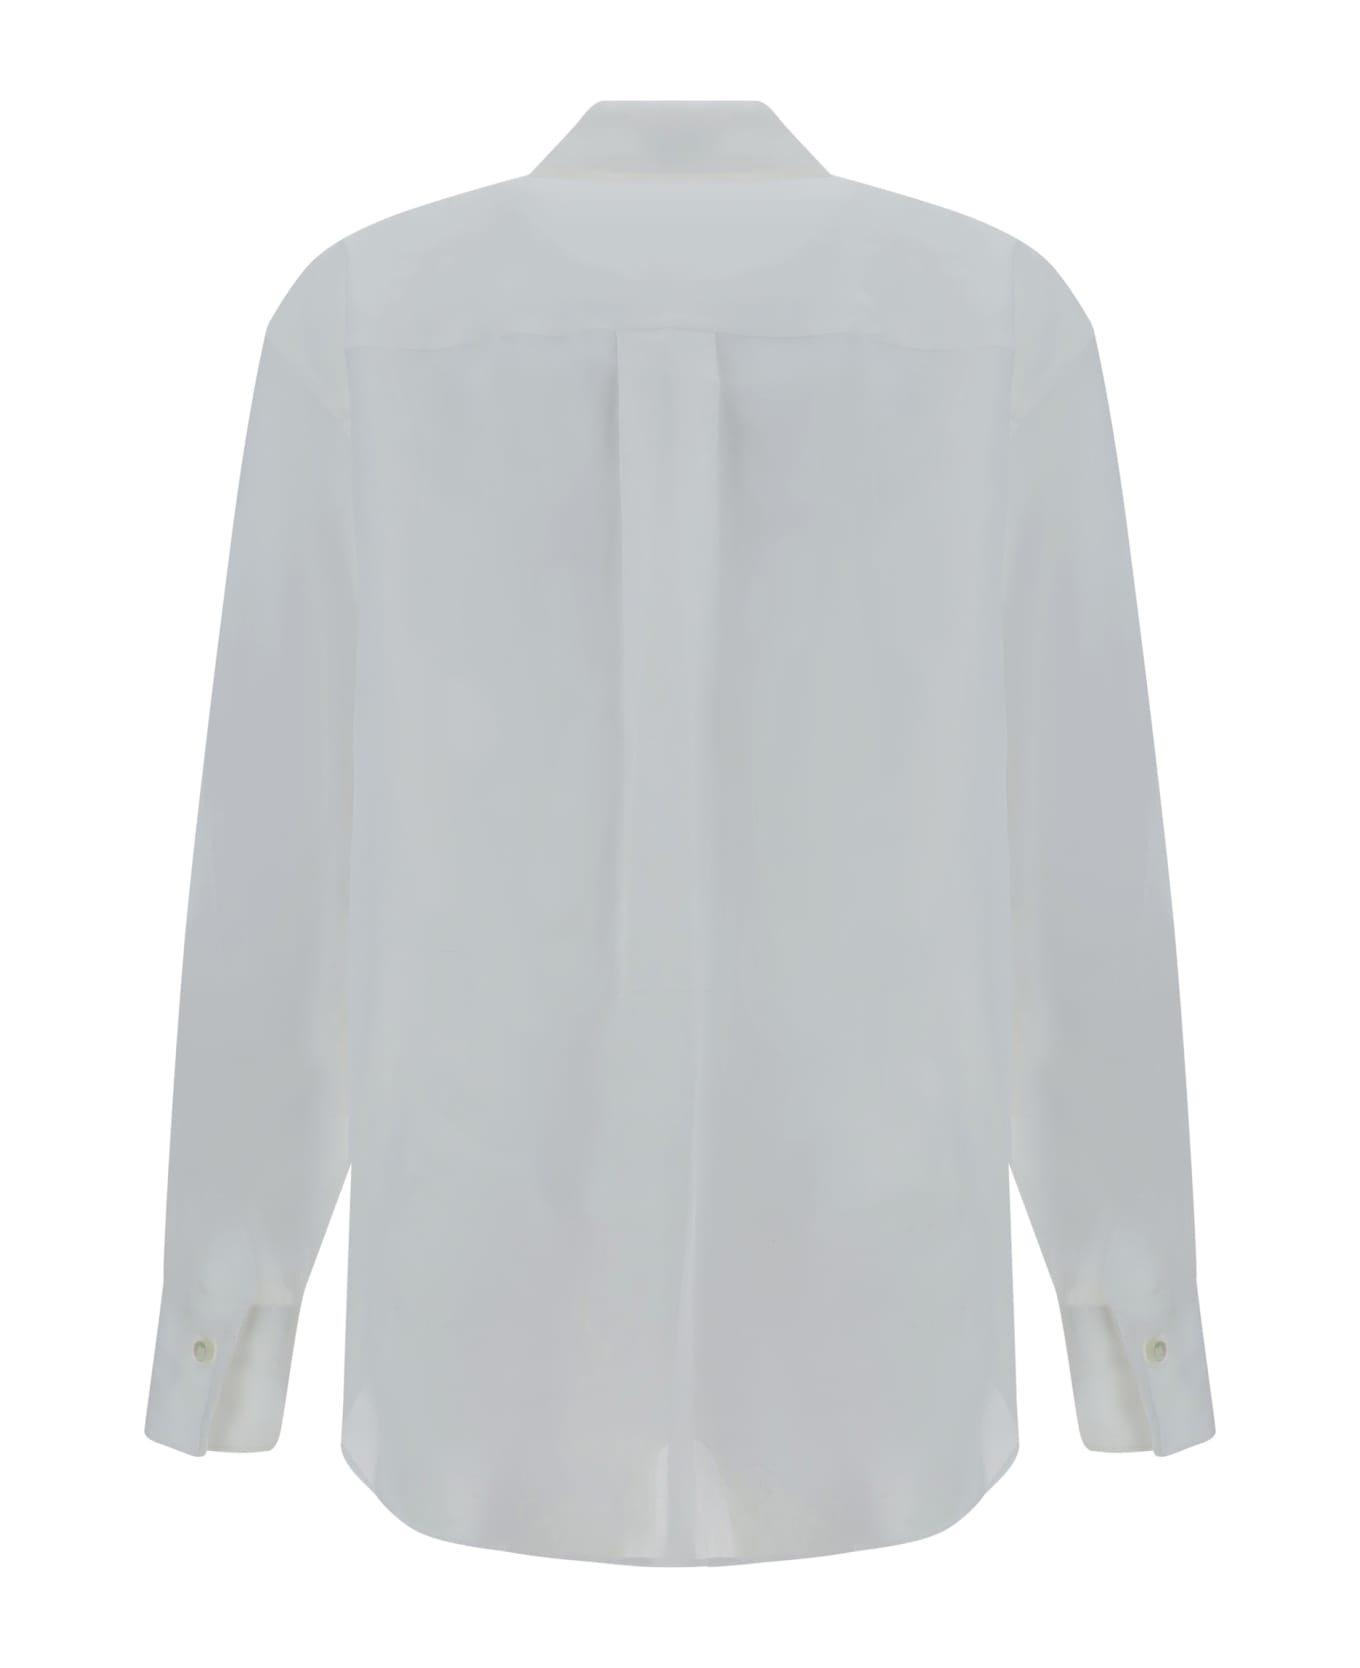 Brunello Cucinelli Floral Embroidery Shirt - Bianco Ottico シャツ